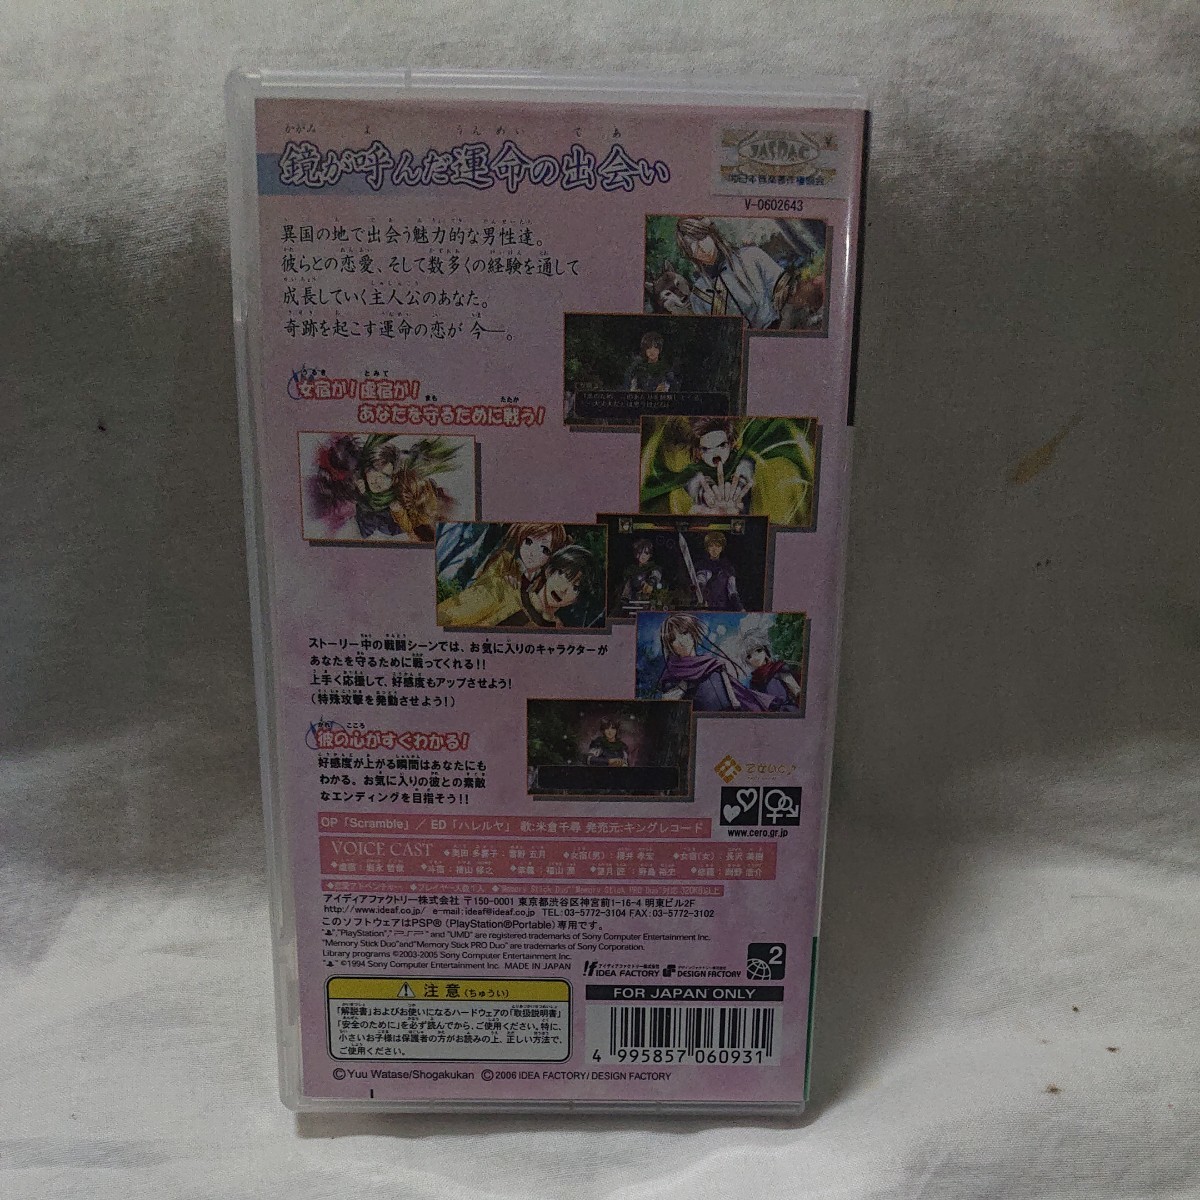 PSPふしぎ遊戯 玄武開伝 外伝 鏡の巫女 開封品 動作確認済み  PSPソフト